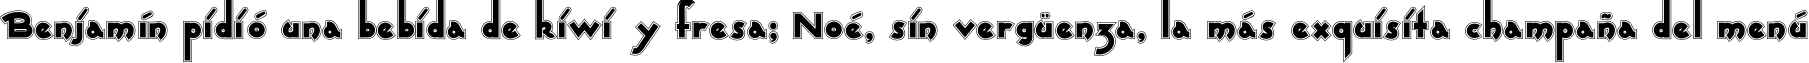 Пример написания шрифтом CaptainSwabby текста на испанском